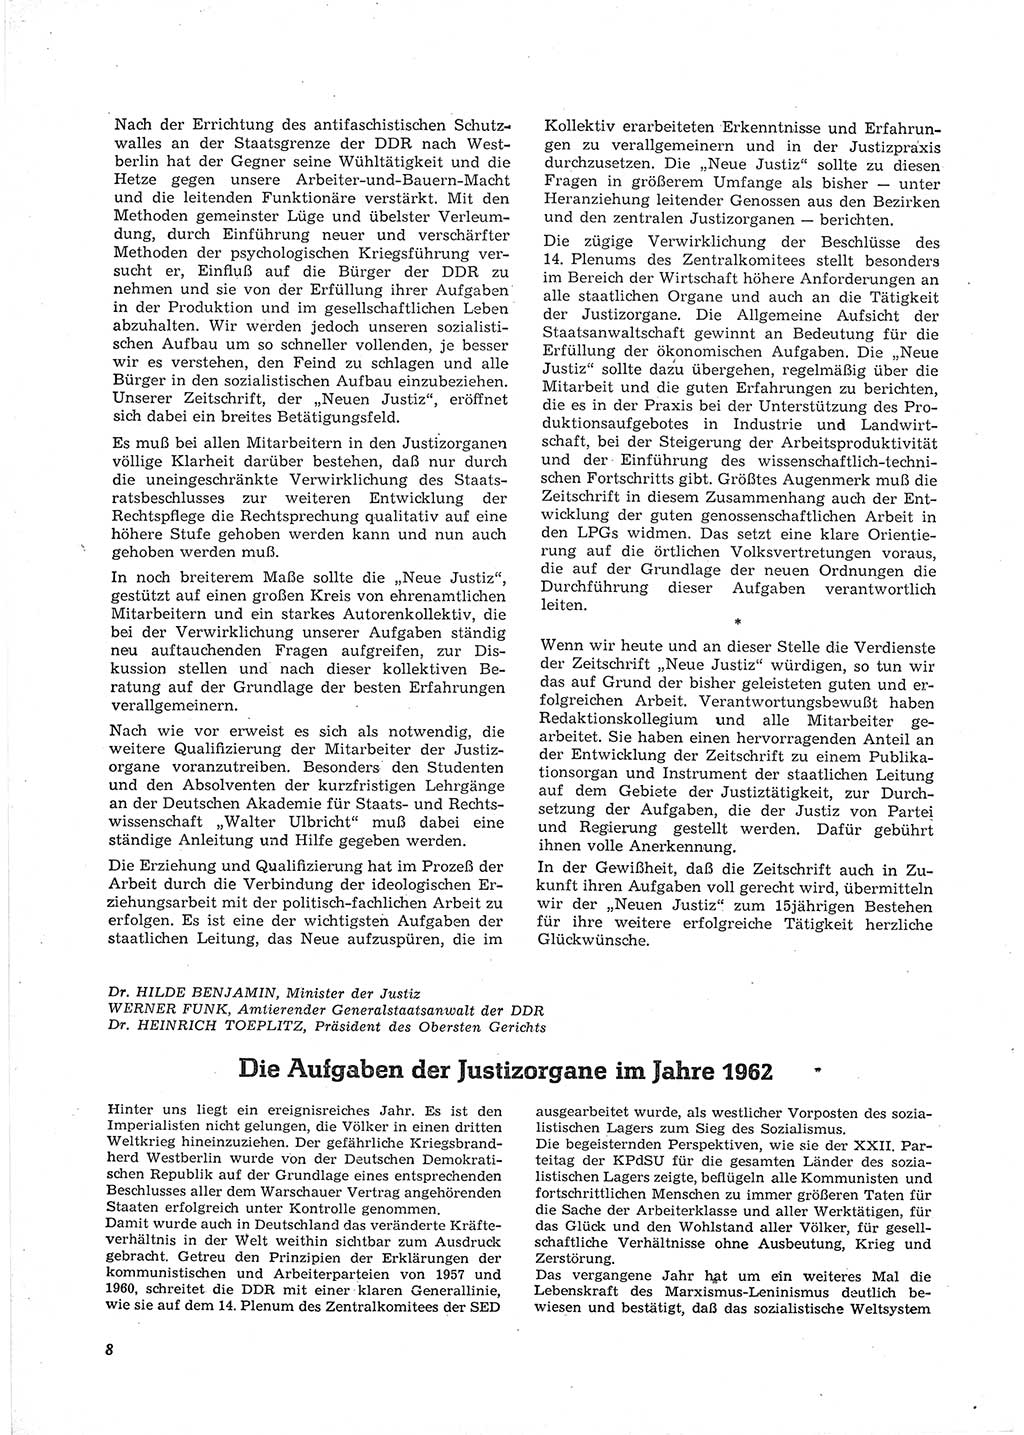 Neue Justiz (NJ), Zeitschrift für Recht und Rechtswissenschaft [Deutsche Demokratische Republik (DDR)], 16. Jahrgang 1962, Seite 8 (NJ DDR 1962, S. 8)